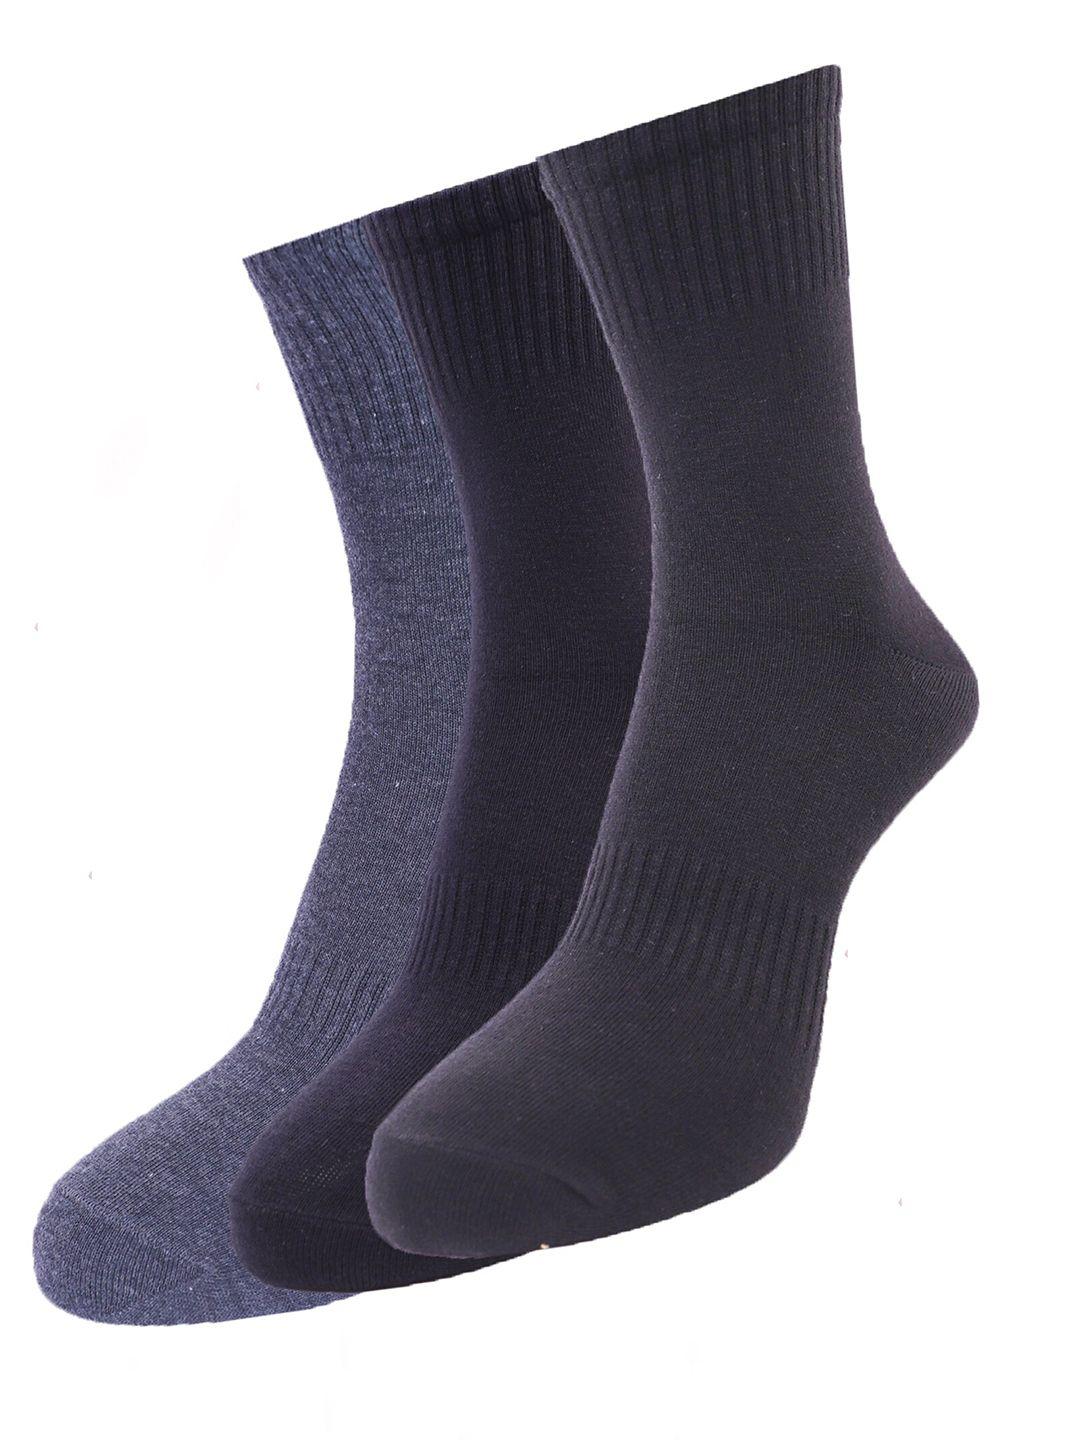 dollar-men-pack-of-3-assorted-ankle-length-socks